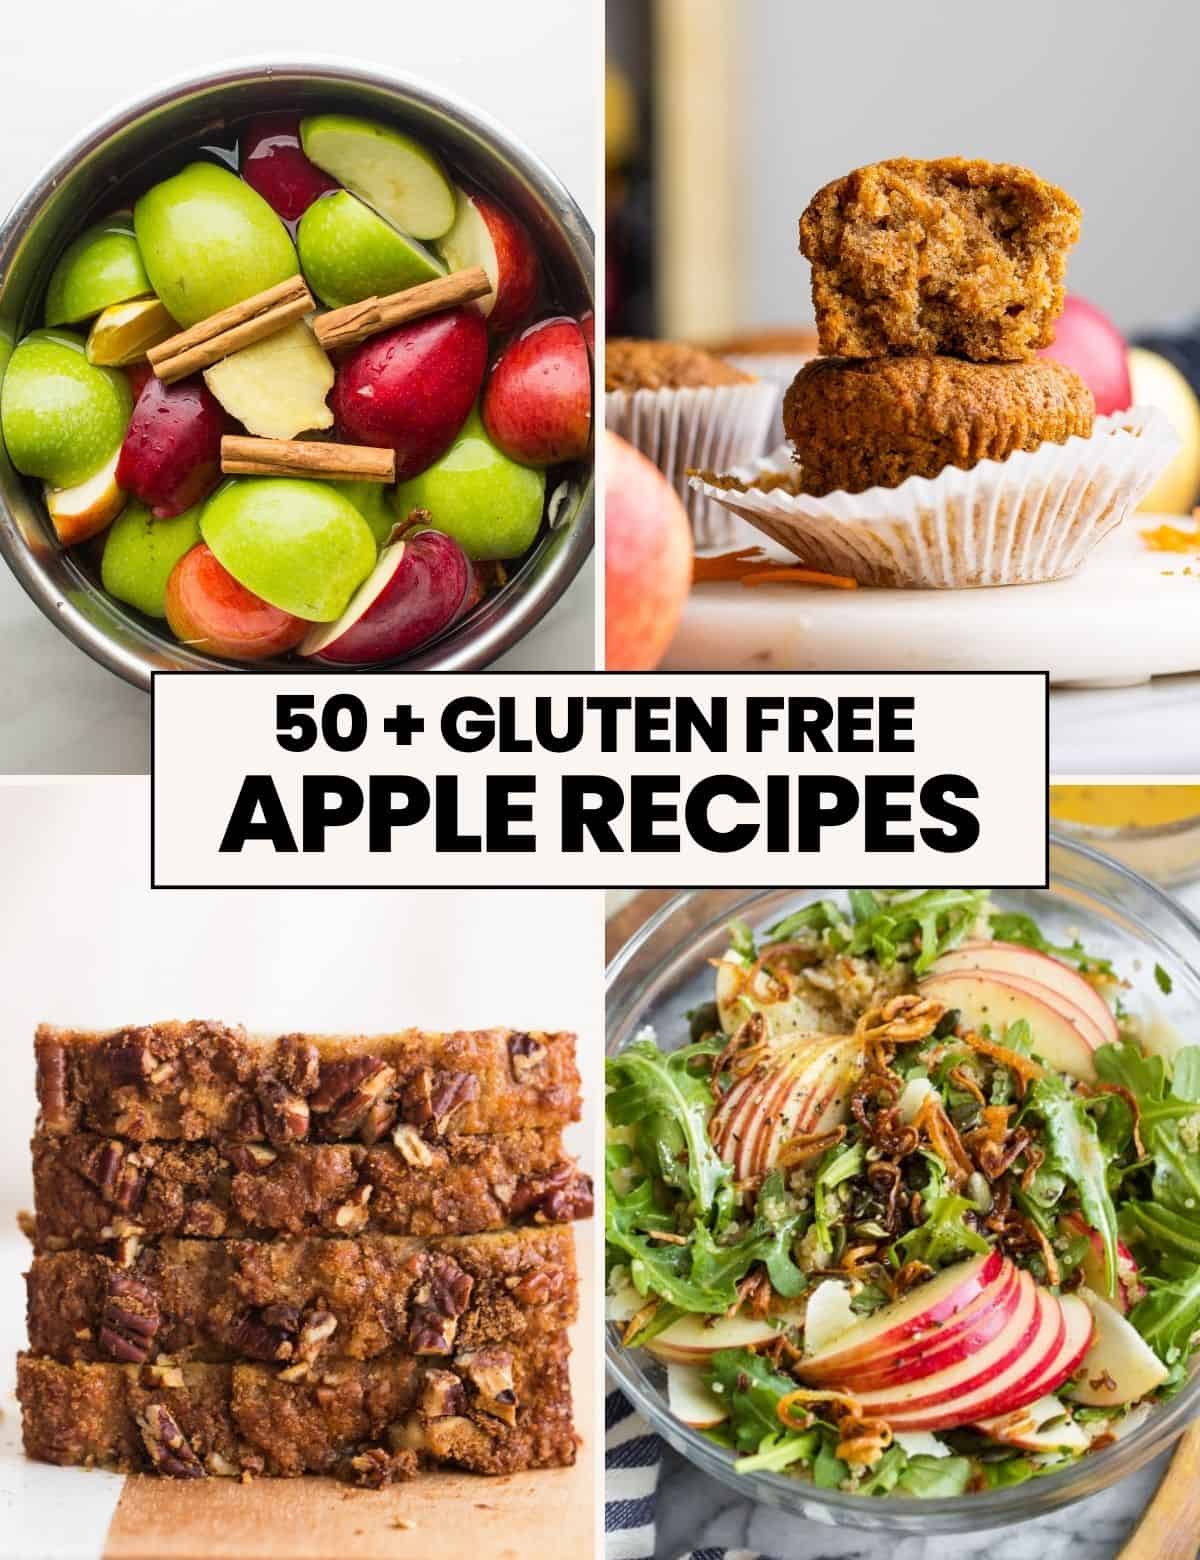 gluten free vegan mini cinnamon apple loaves - Sarah Bakes Gluten Free